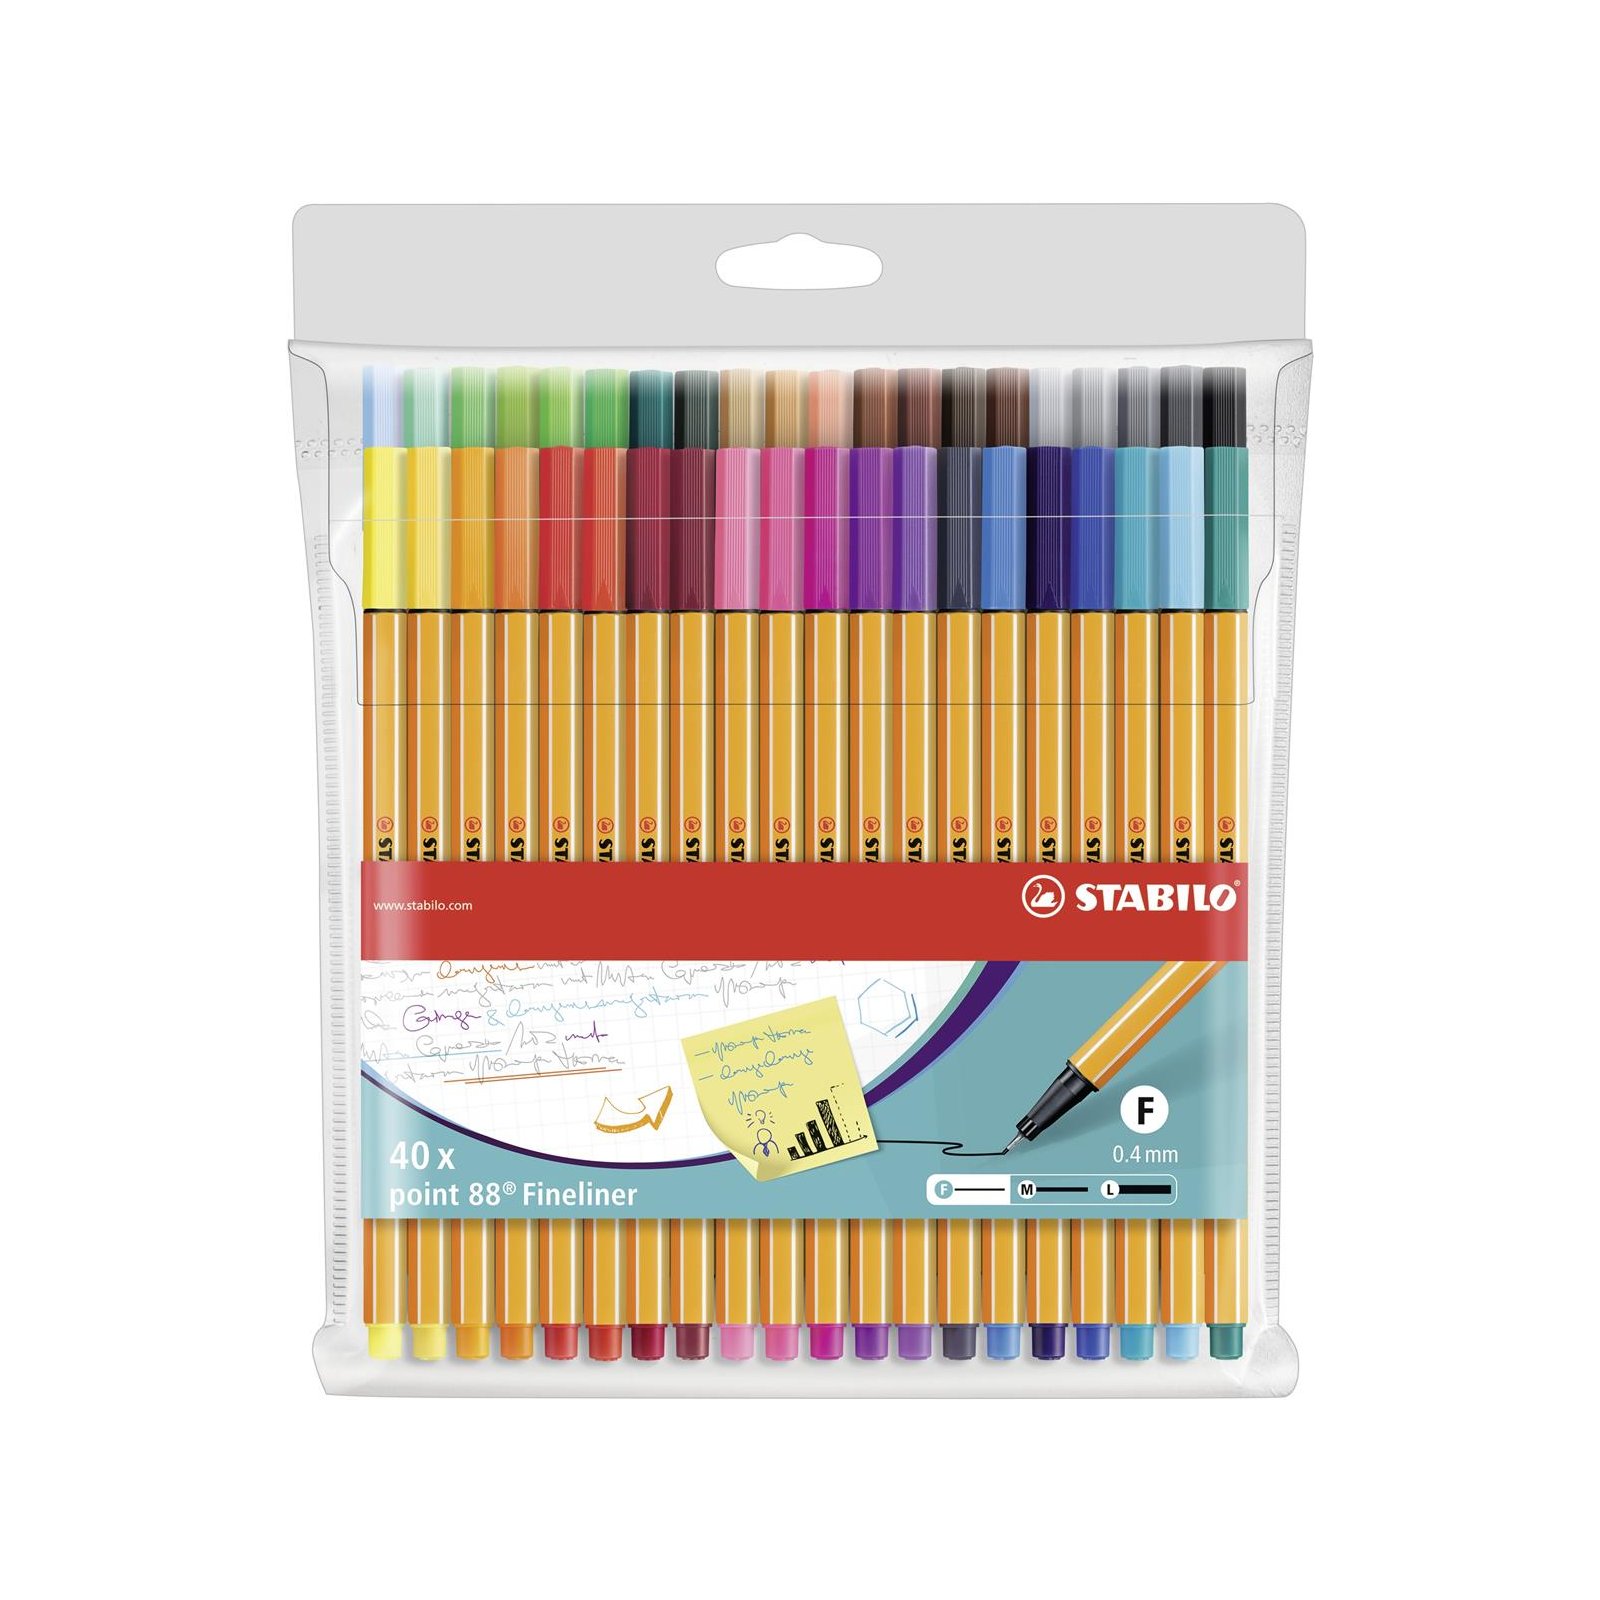 Point 24 Farben Fineliner Tintenschreiber Stifte Sets 0,4mm Zubehör